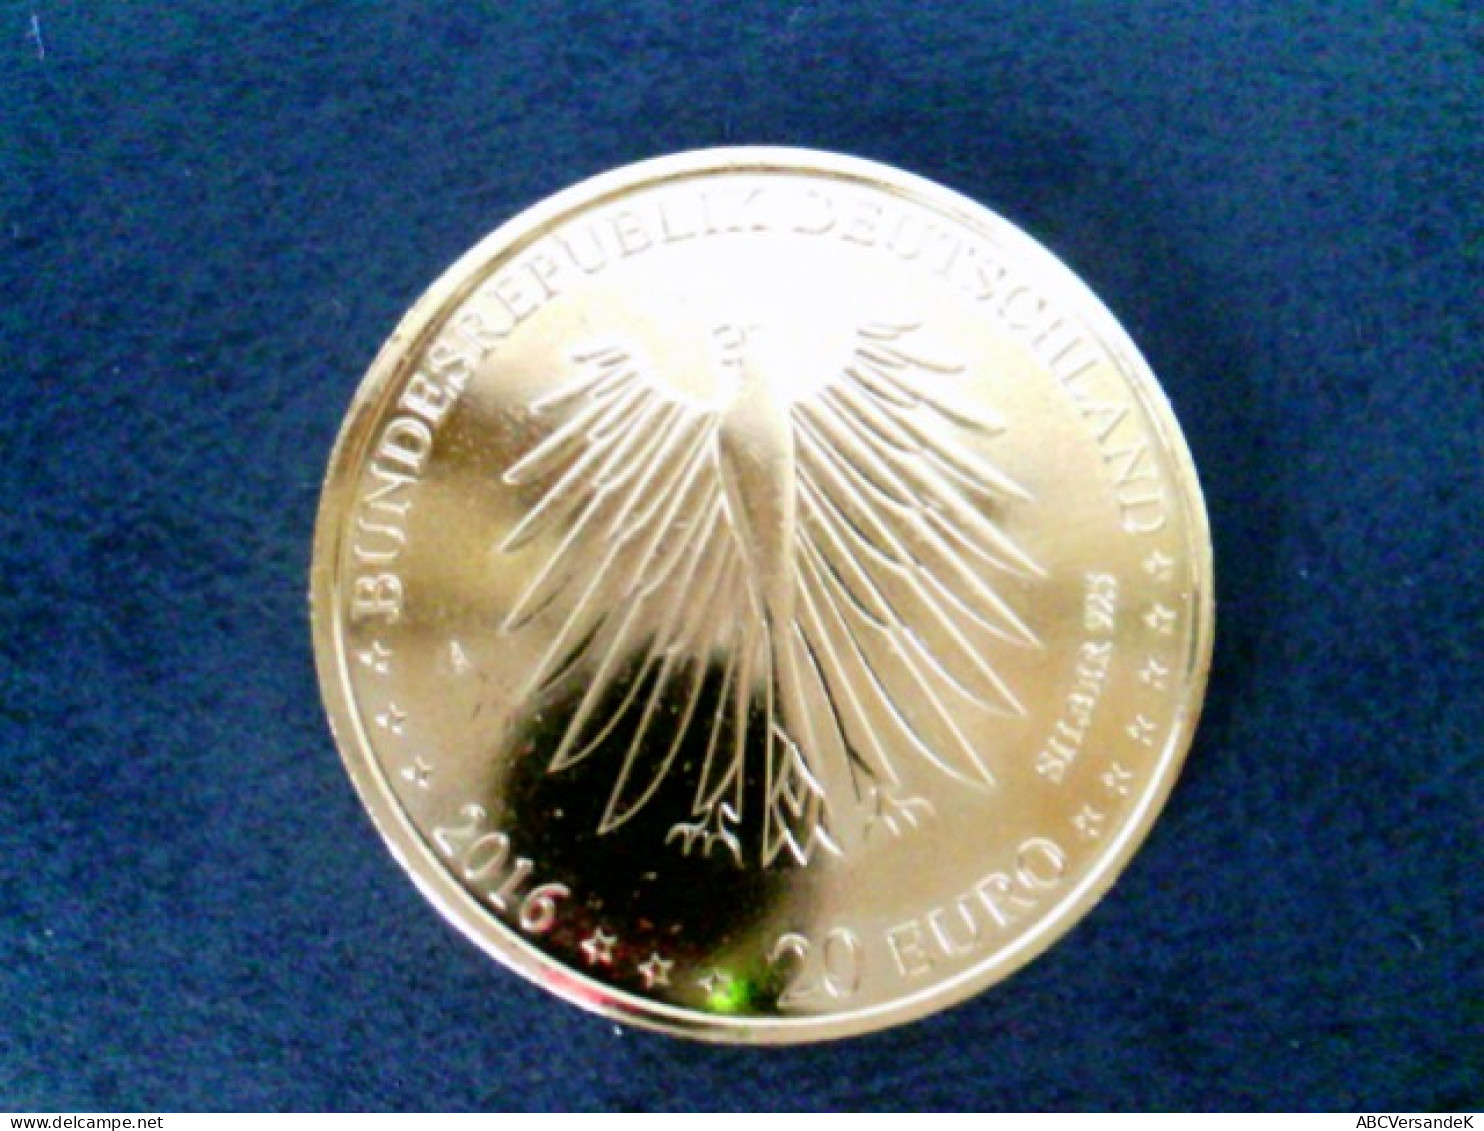 Münzen/ Medaillen: 1 Münze 20 Euro Nelly Sachs, 925 Silber, Vergoldet Mit 24 Karat Goldauflage, In Kapsel - Numismatik